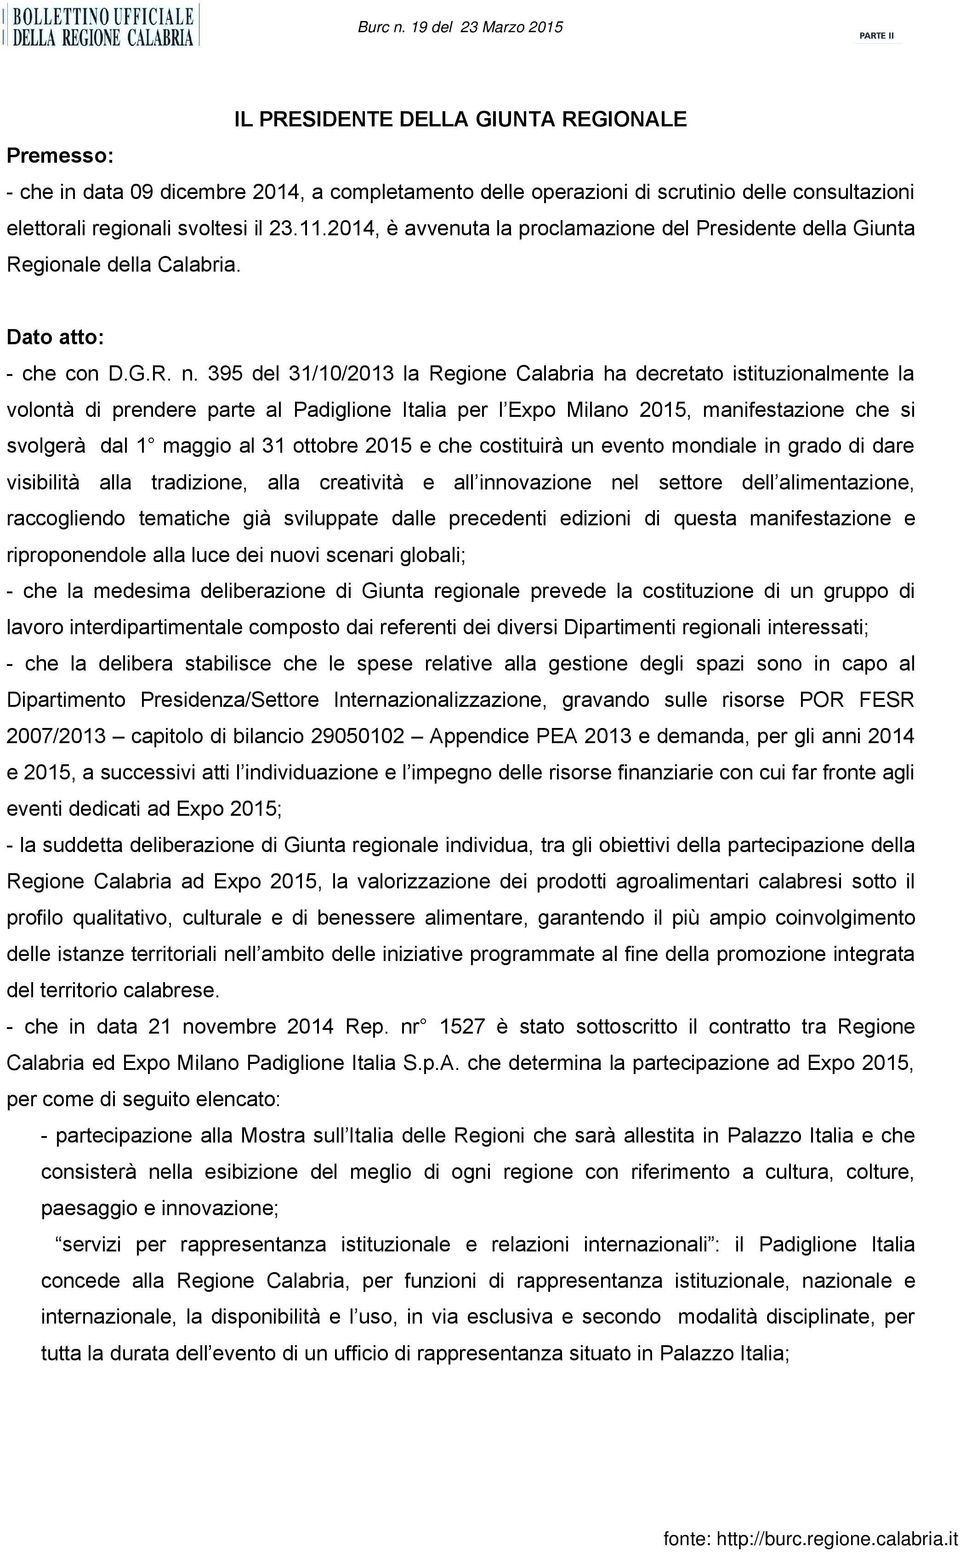 395 del 31/10/2013 la Regione Calabria ha decretato istituzionalmente la volontà di prendere parte al Padiglione Italia per l Expo Milano 2015, manifestazione che si svolgerà dal 1 maggio al 31